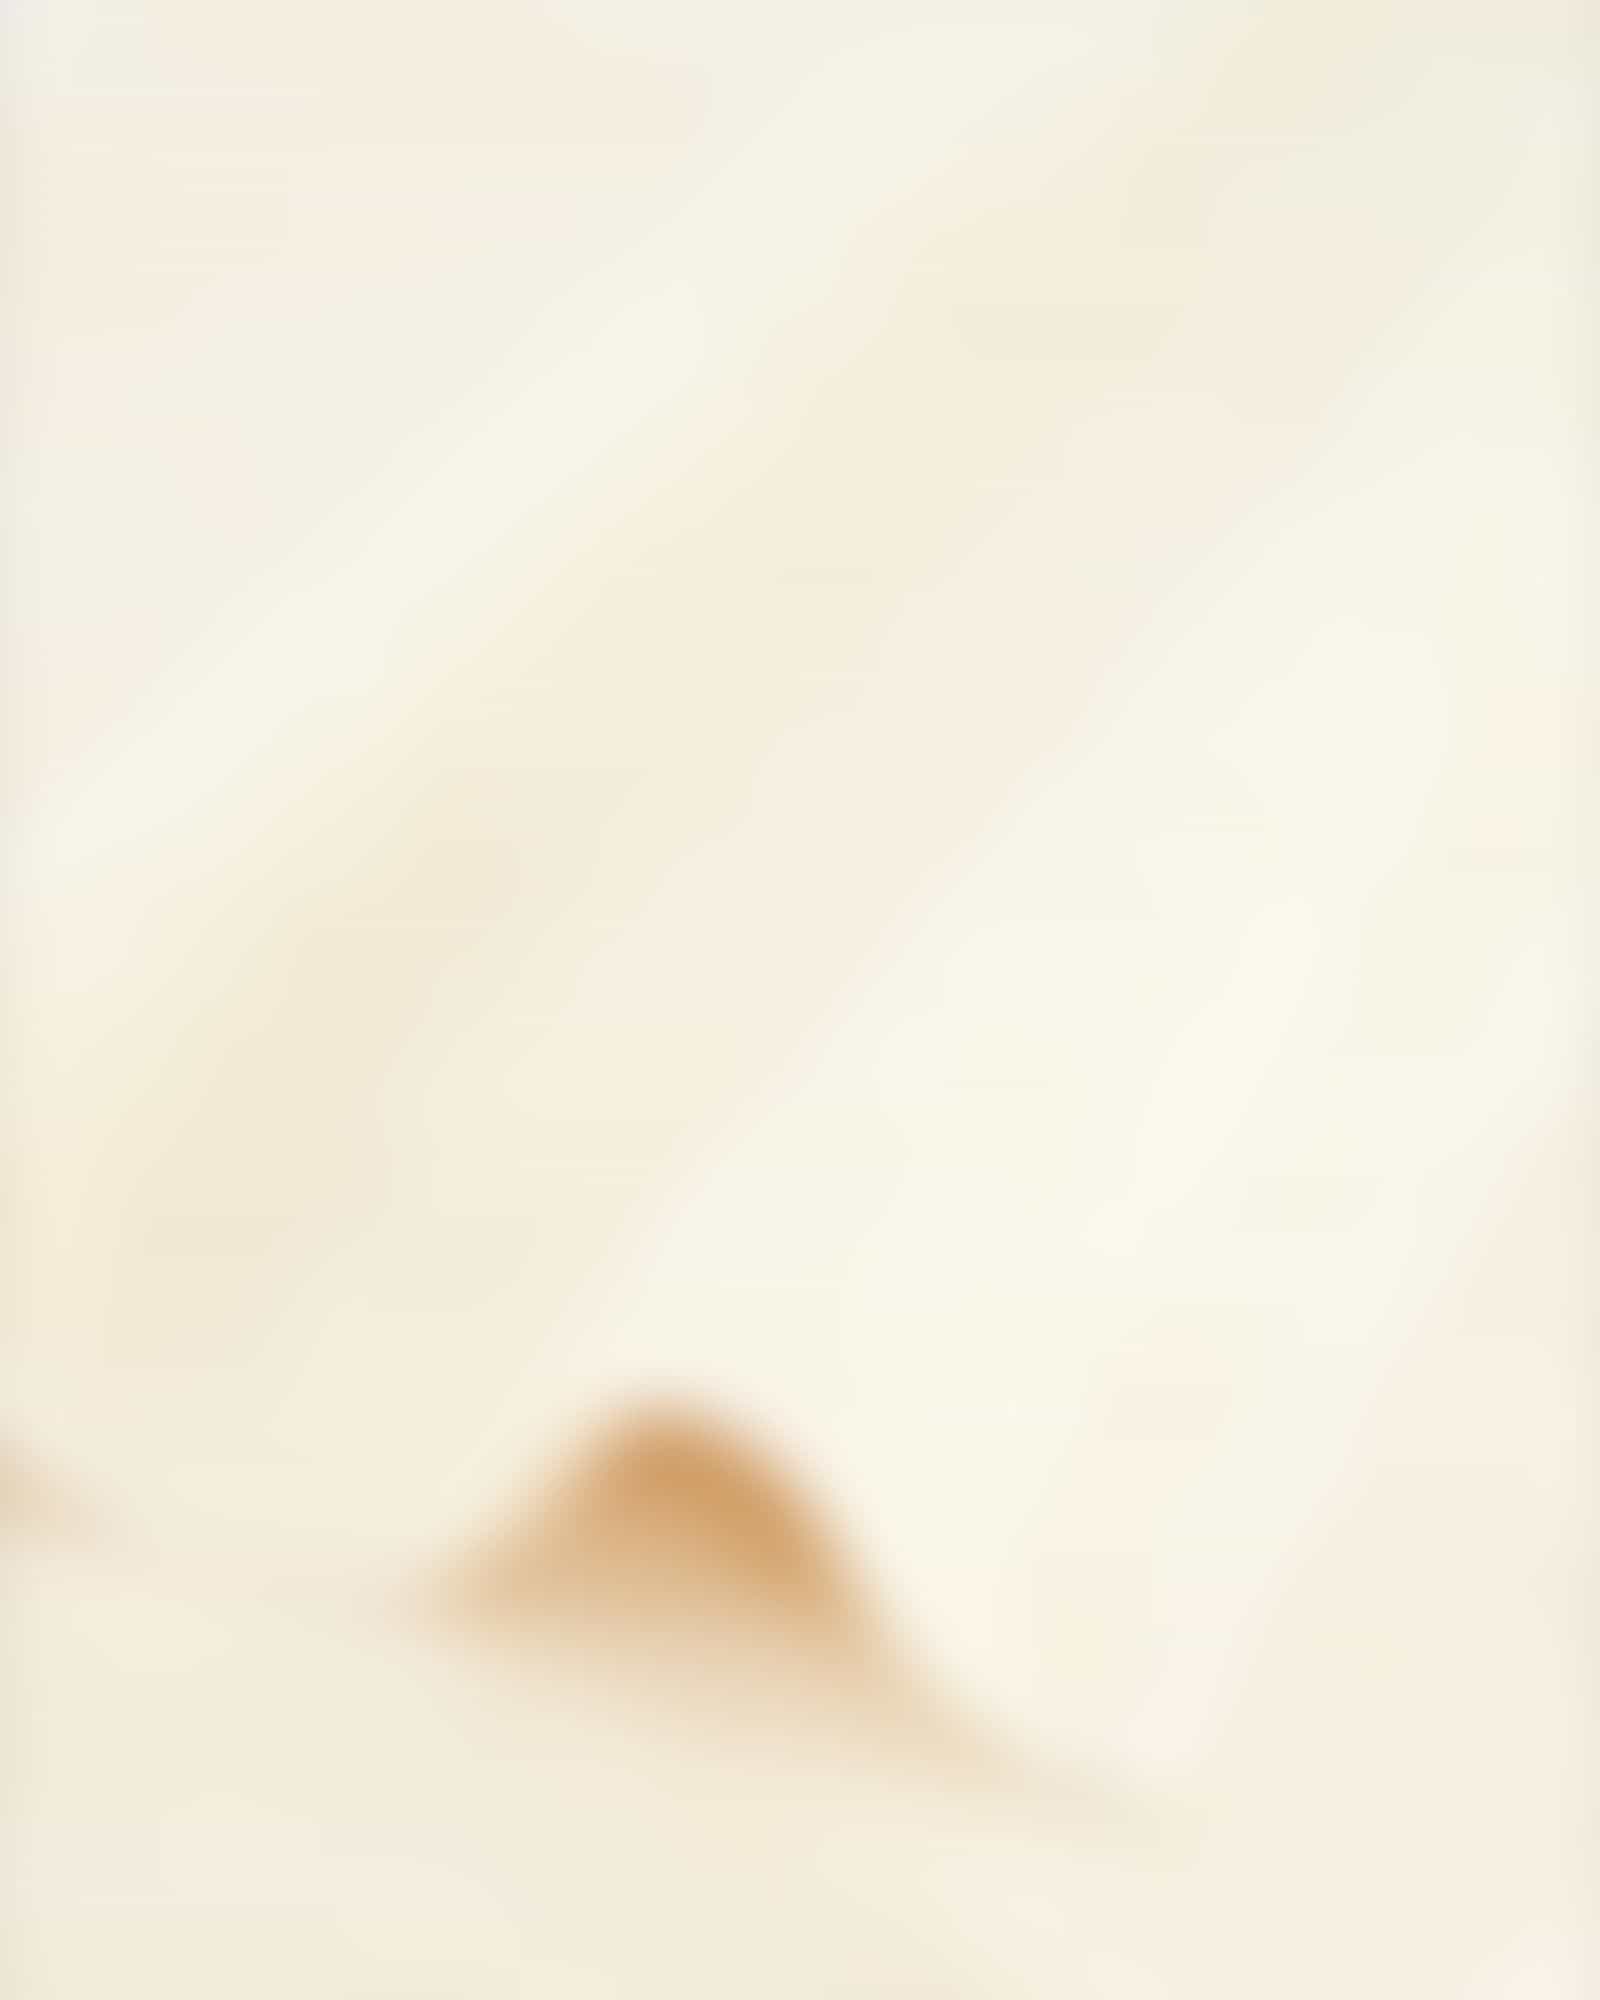 JOOP Uni Cornflower 1670 - Farbe: Creme - 356 - Handtuch 50x100 cm